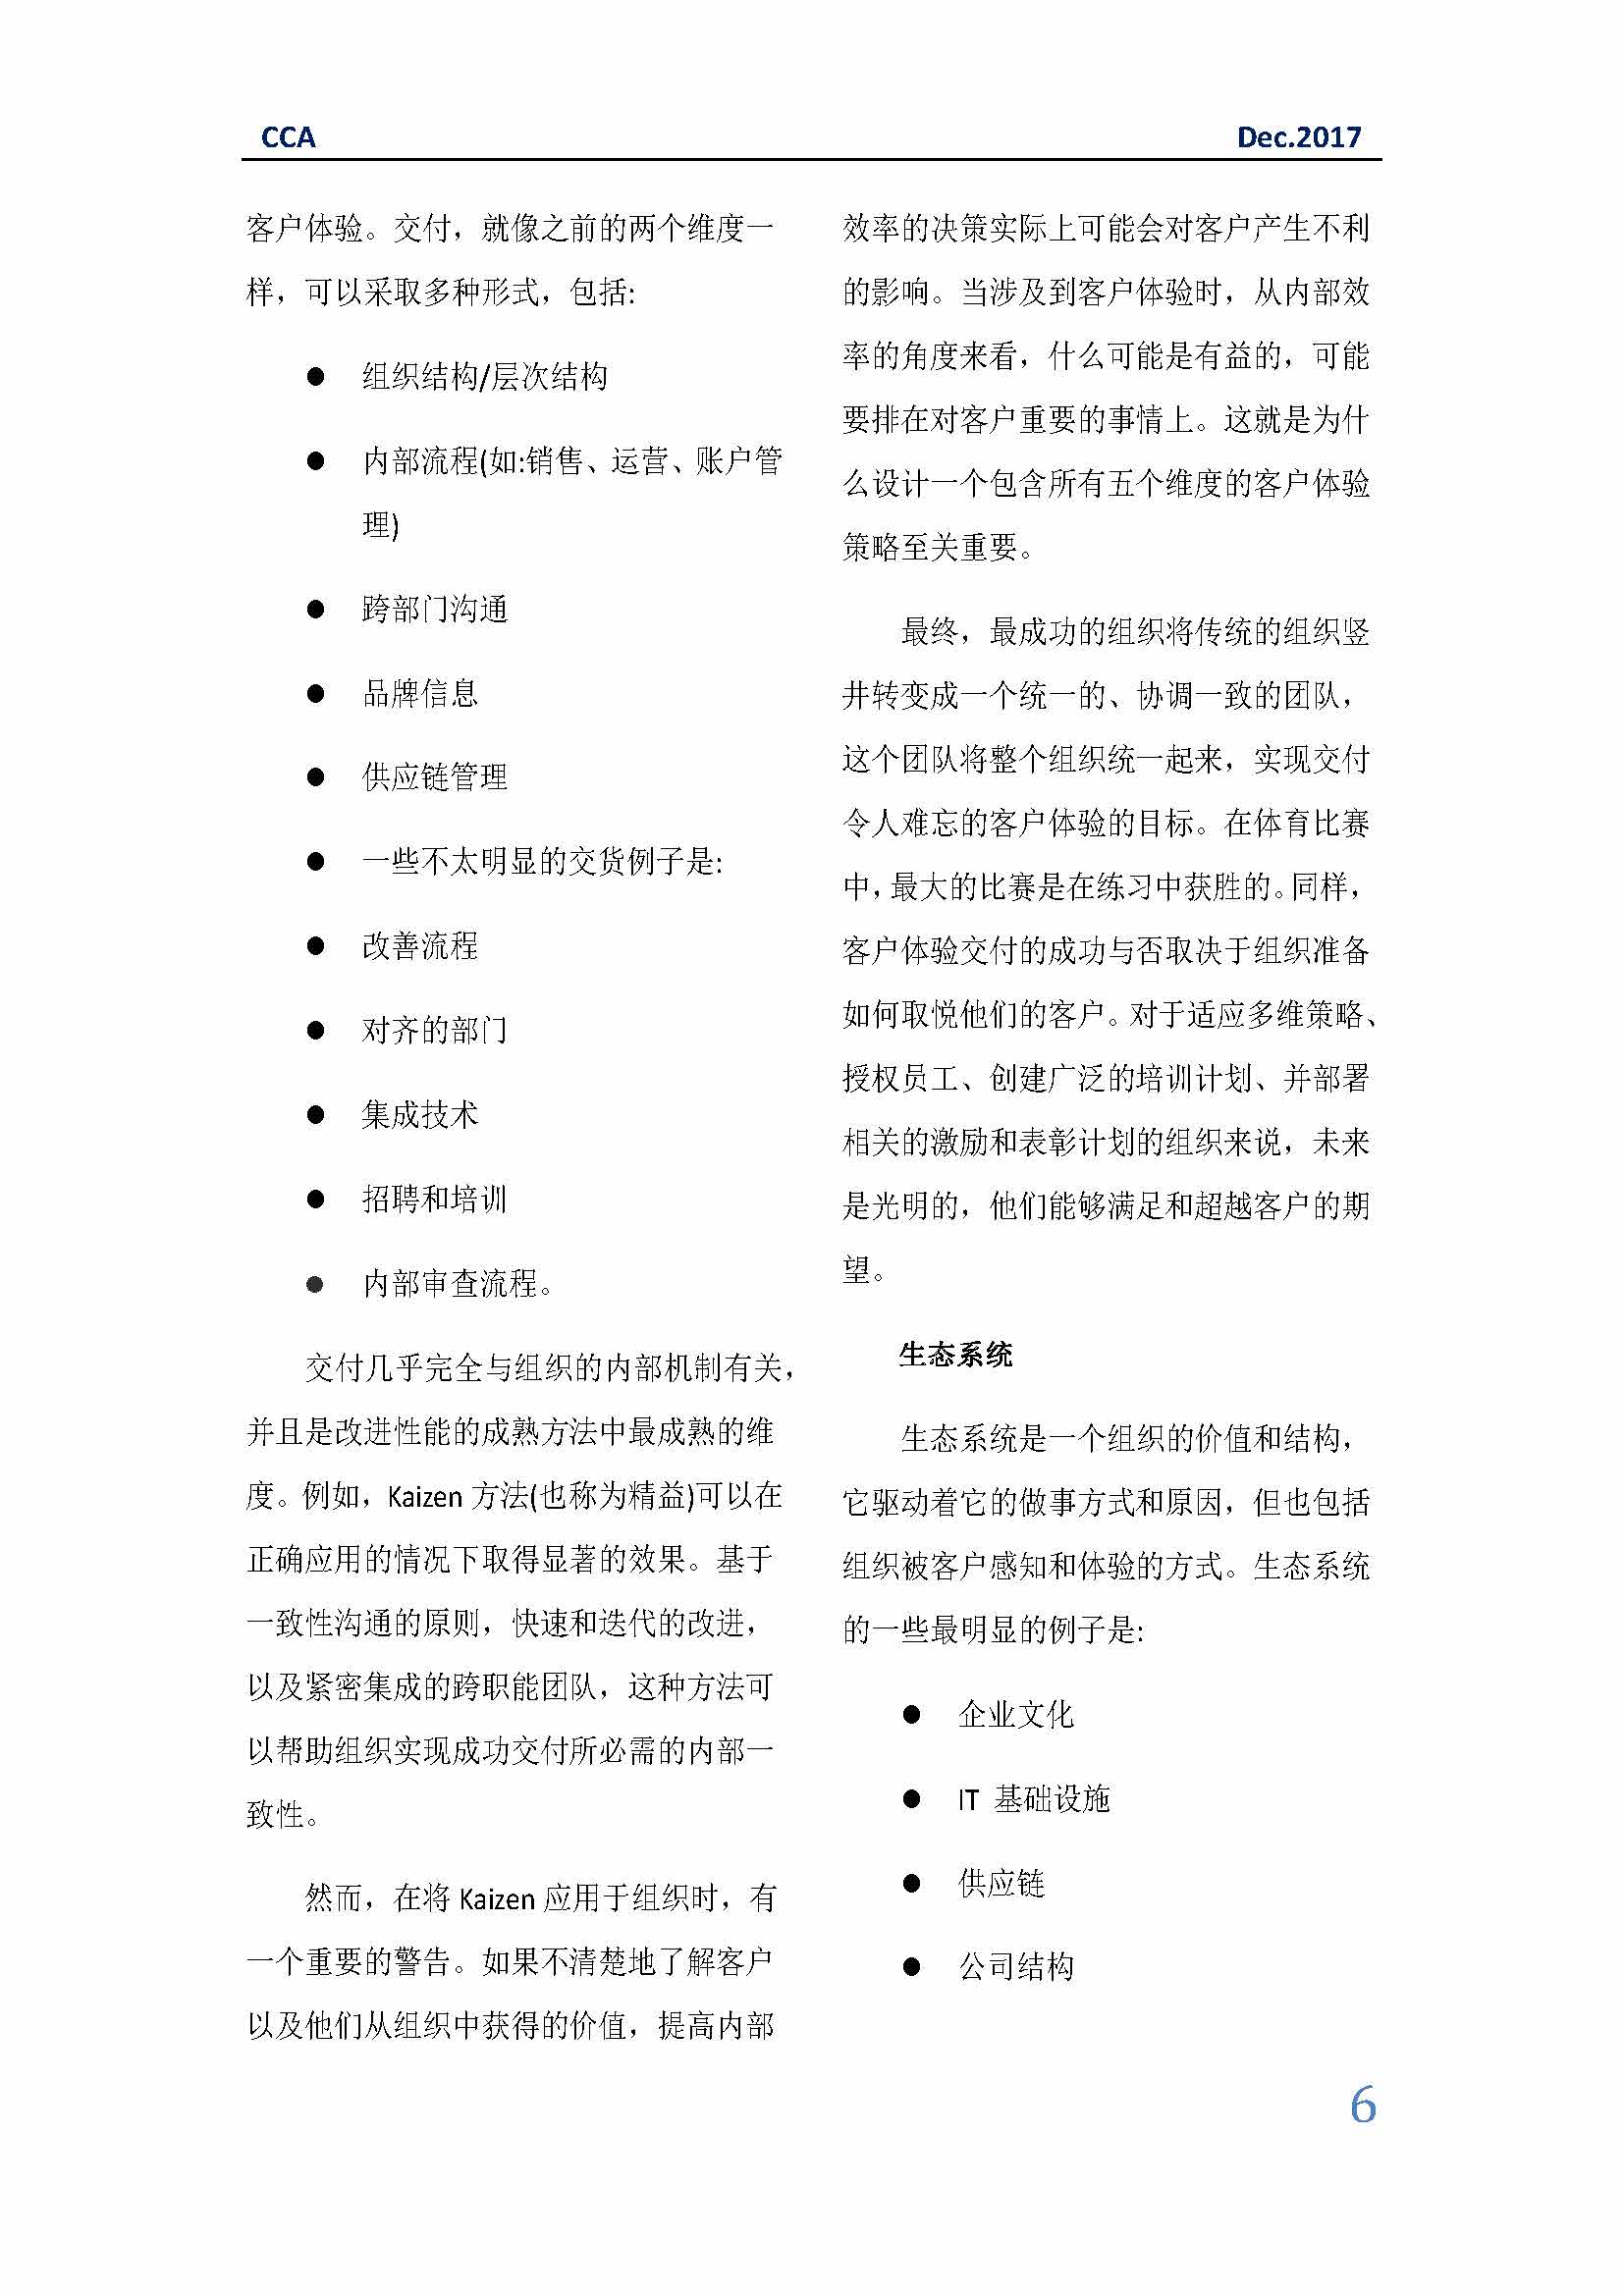 中国科技咨询协会国际快讯（第三十一期）_页面_06.jpg